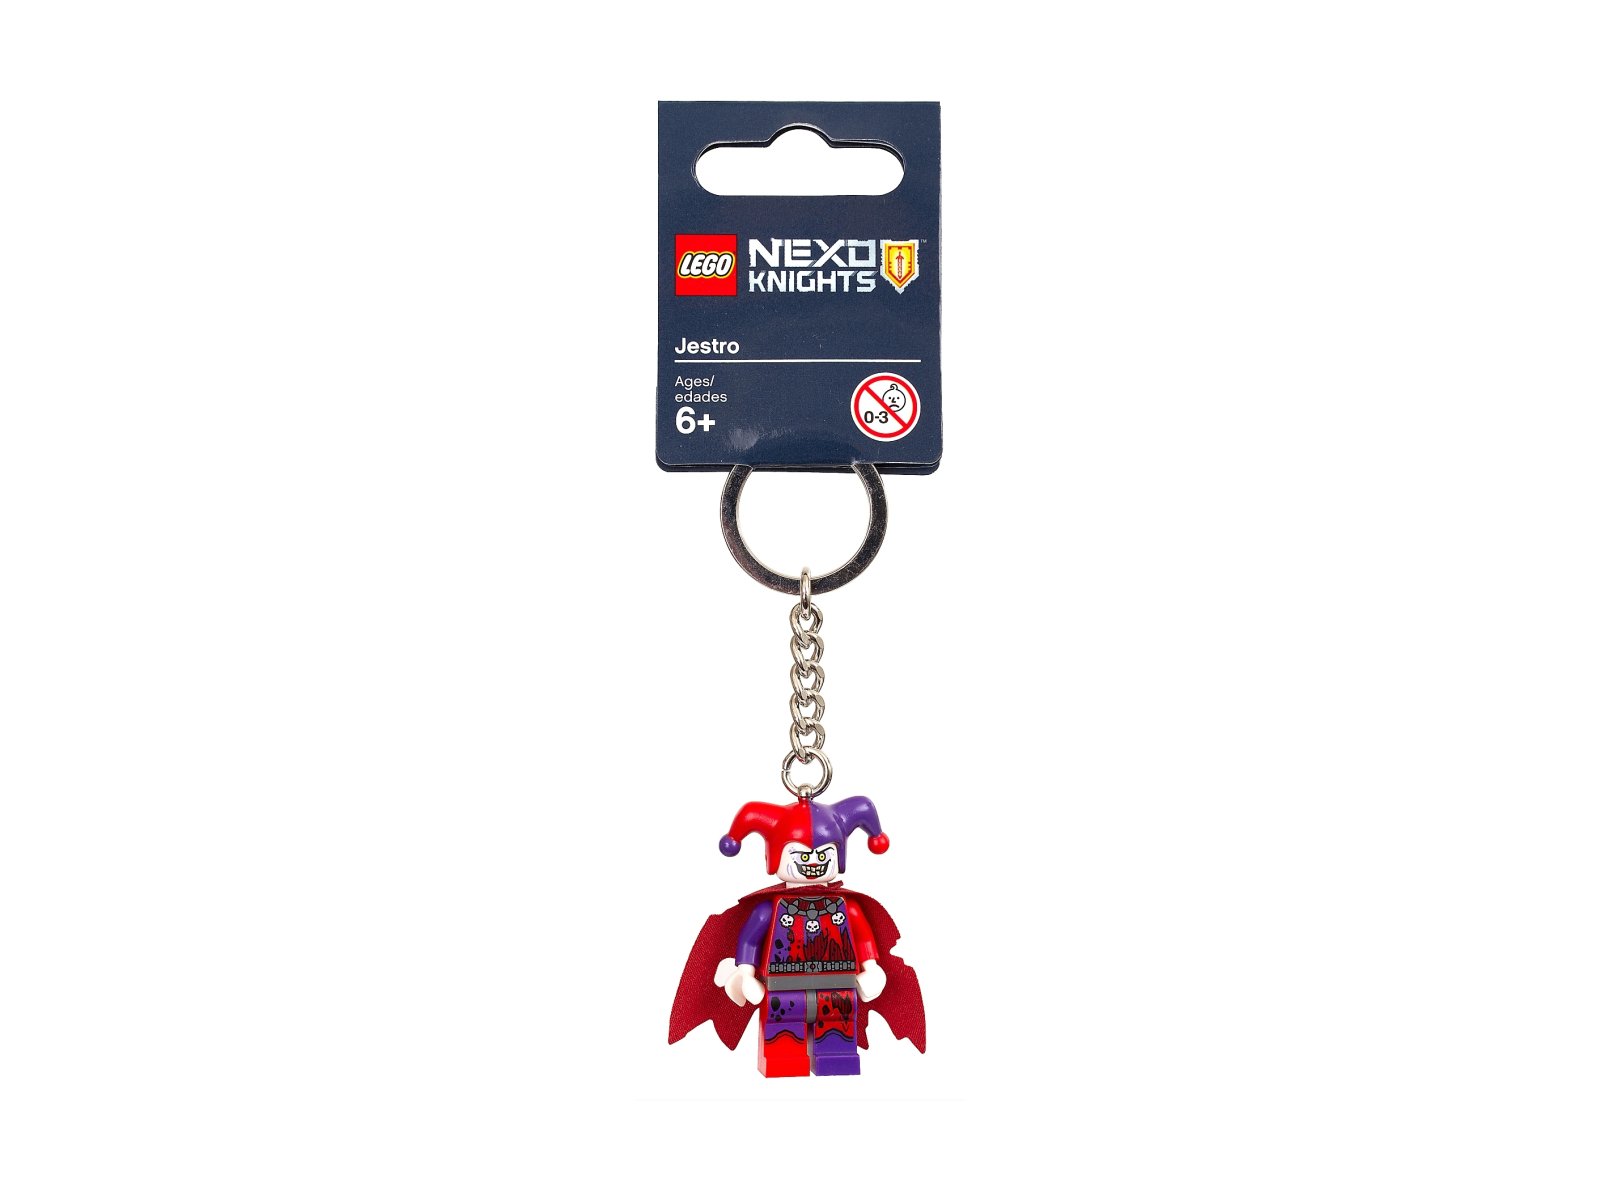 LEGO Nexo Knights Breloczek do kluczy z Jestro 853525